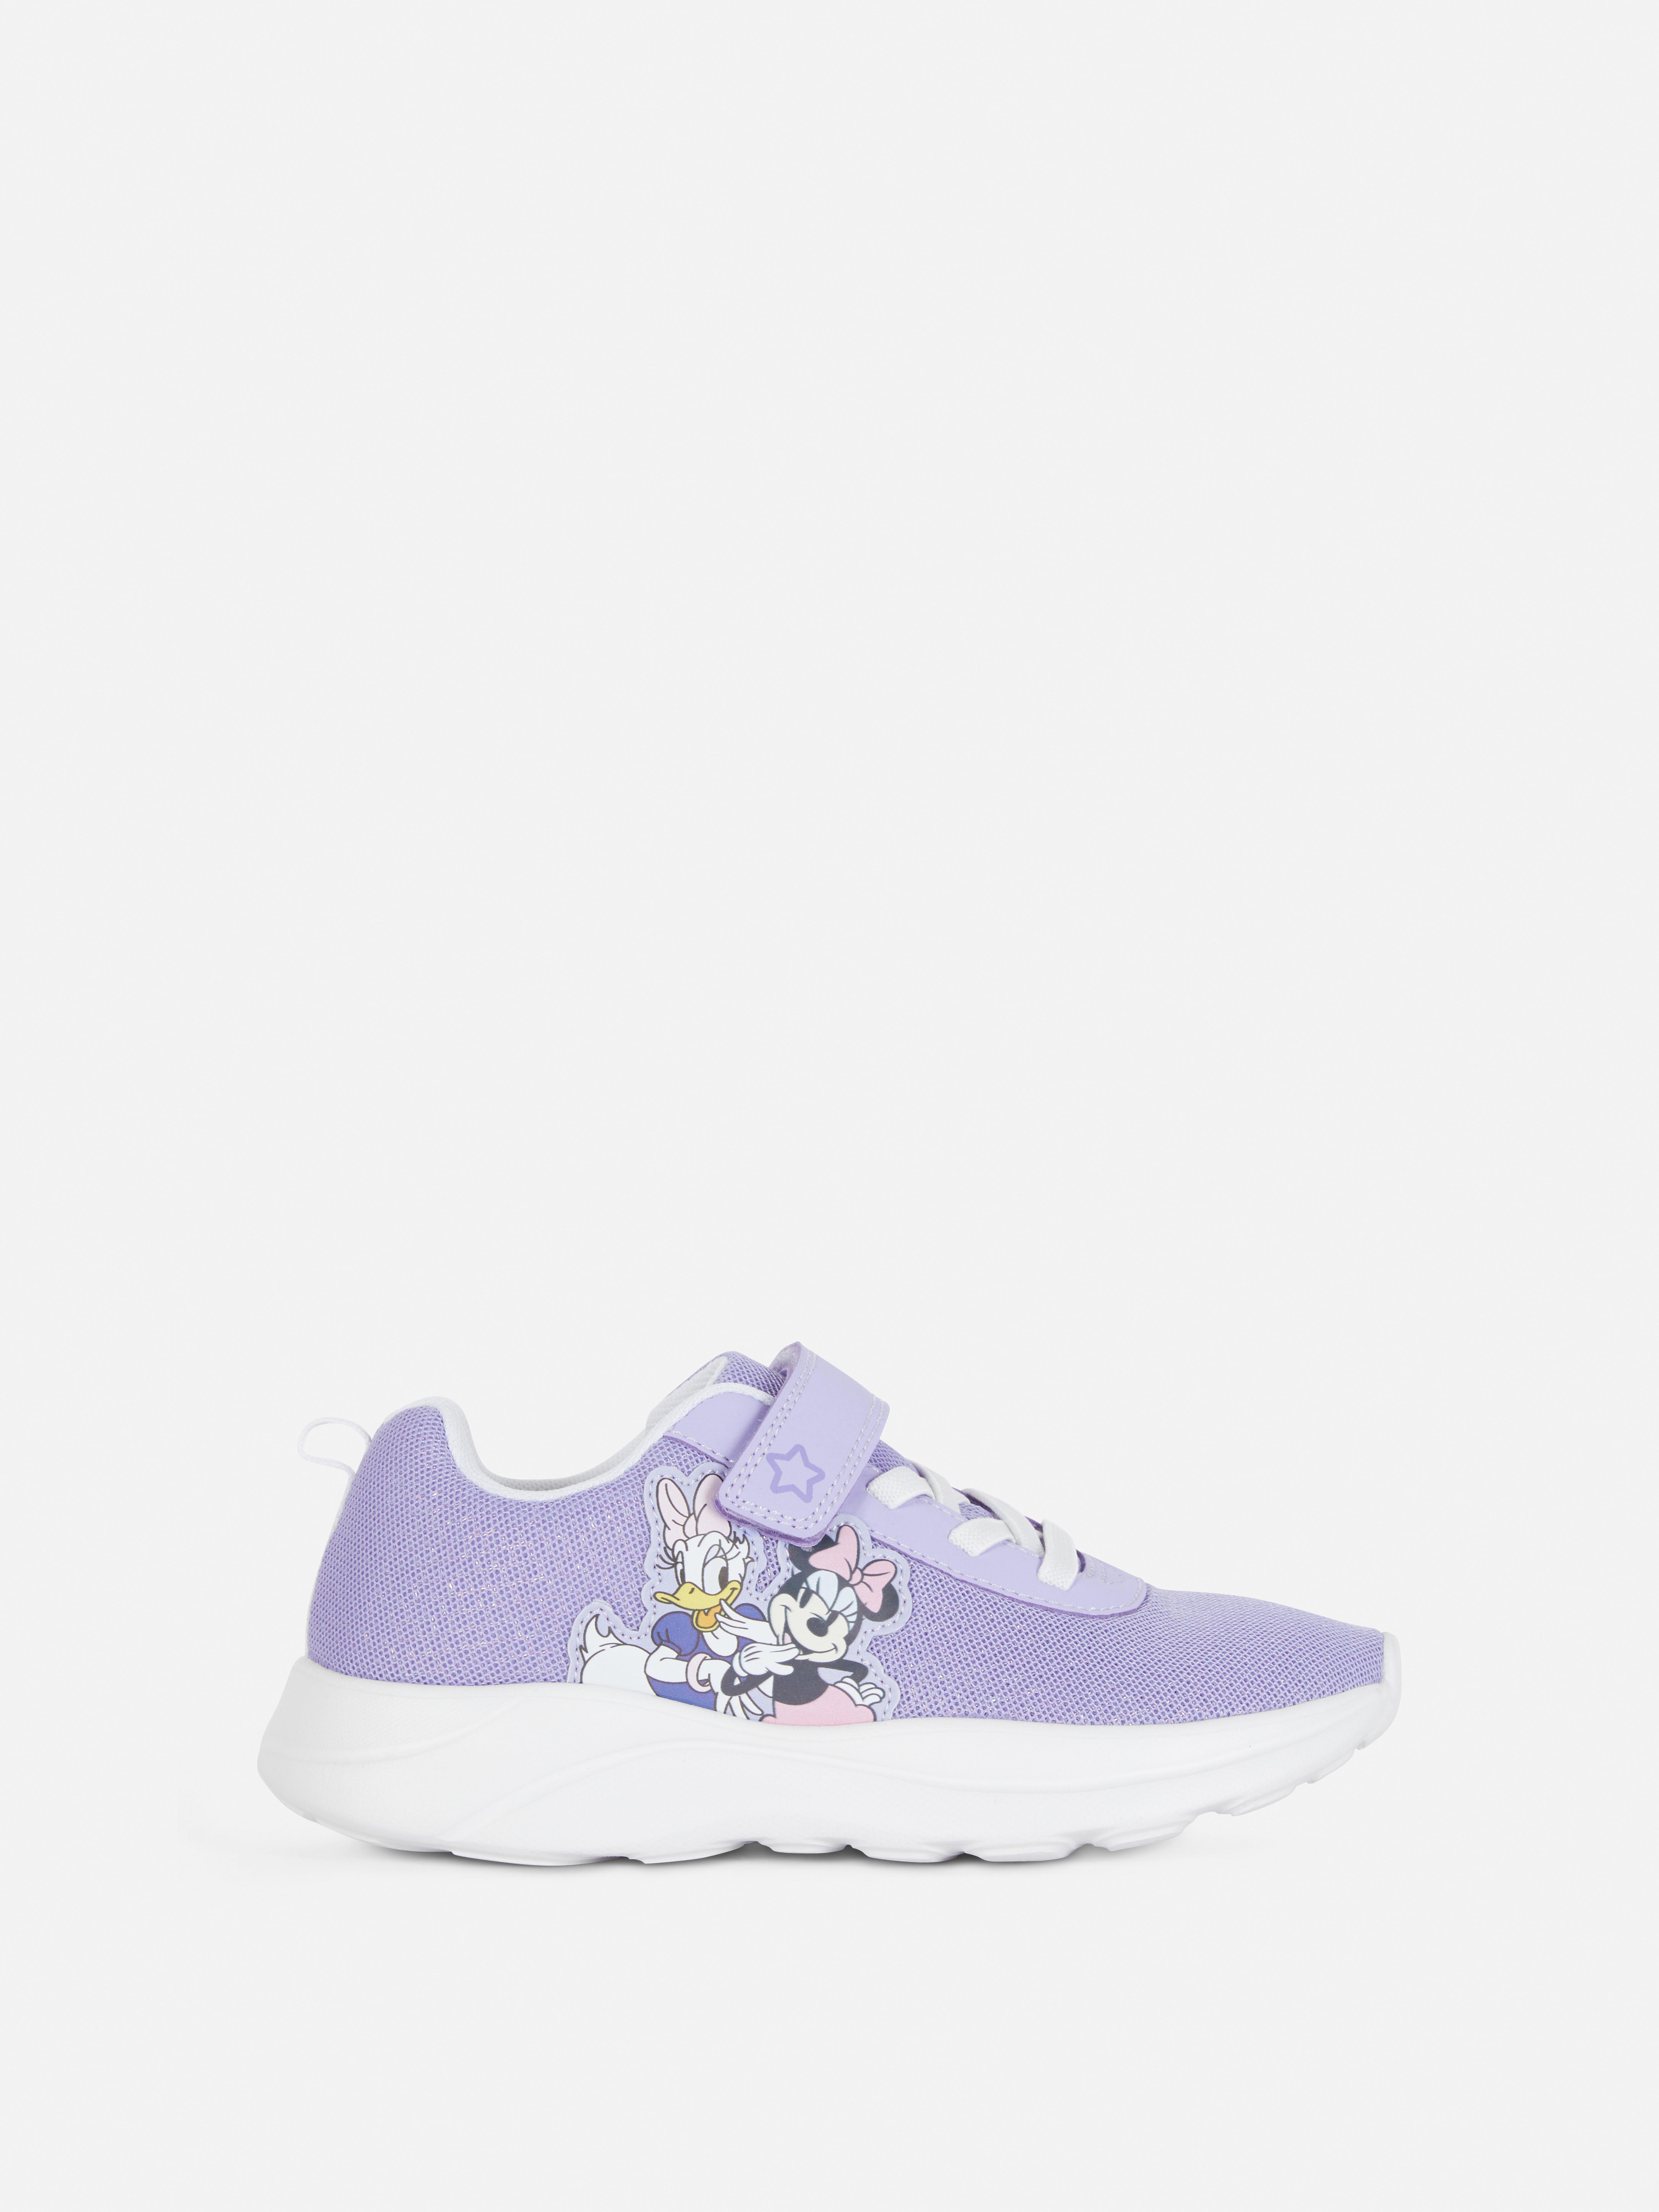 „Disney Minnie Maus und Daisy Duck“ Sneaker